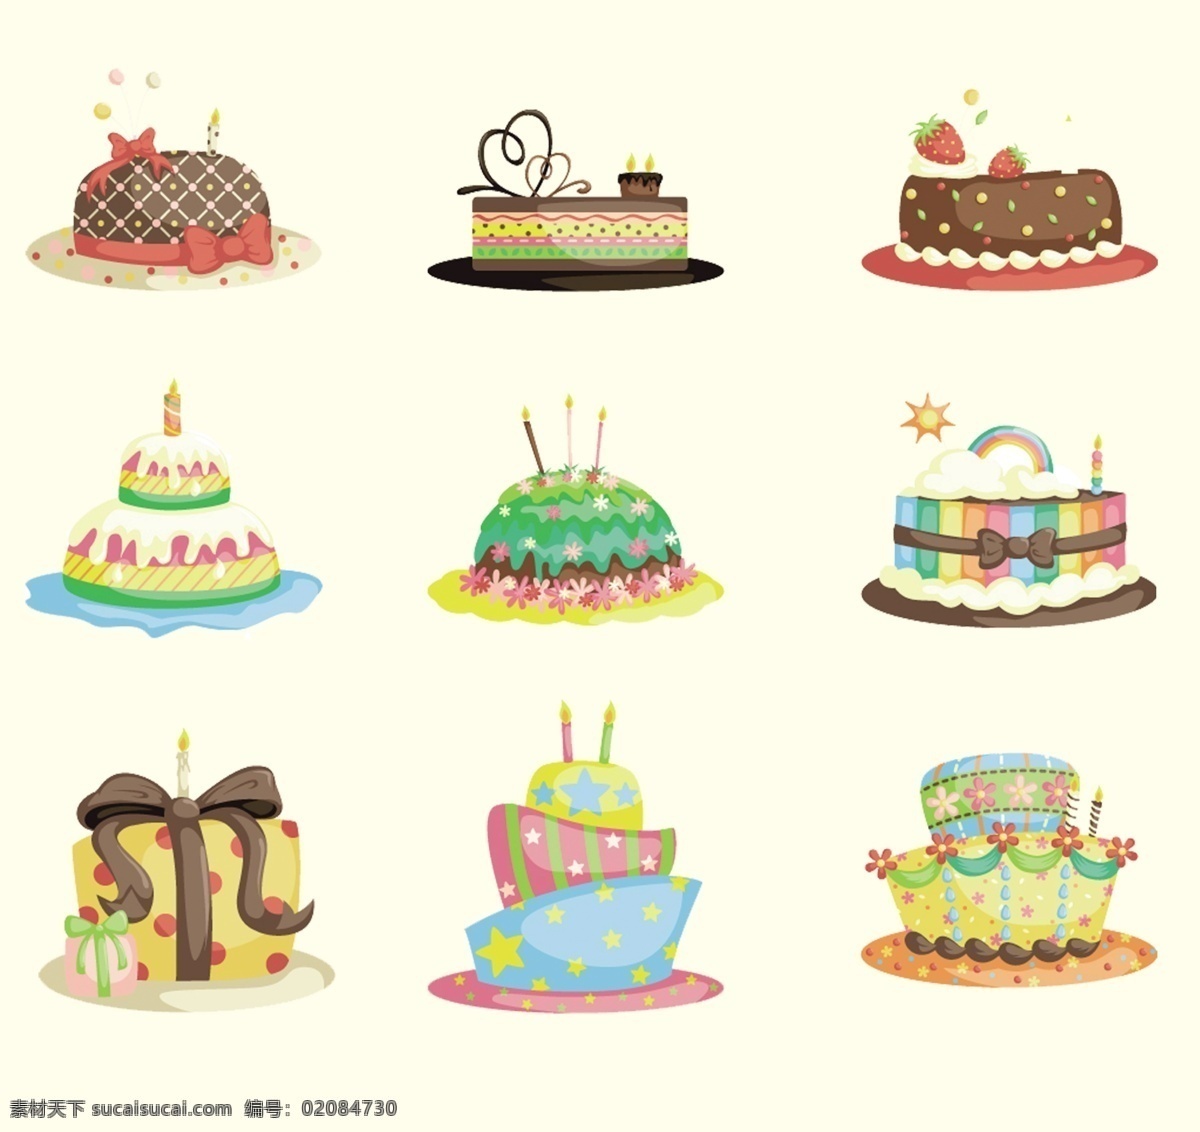 各种生日蛋糕 生日蛋糕 蛋糕素材 生日 生日素材